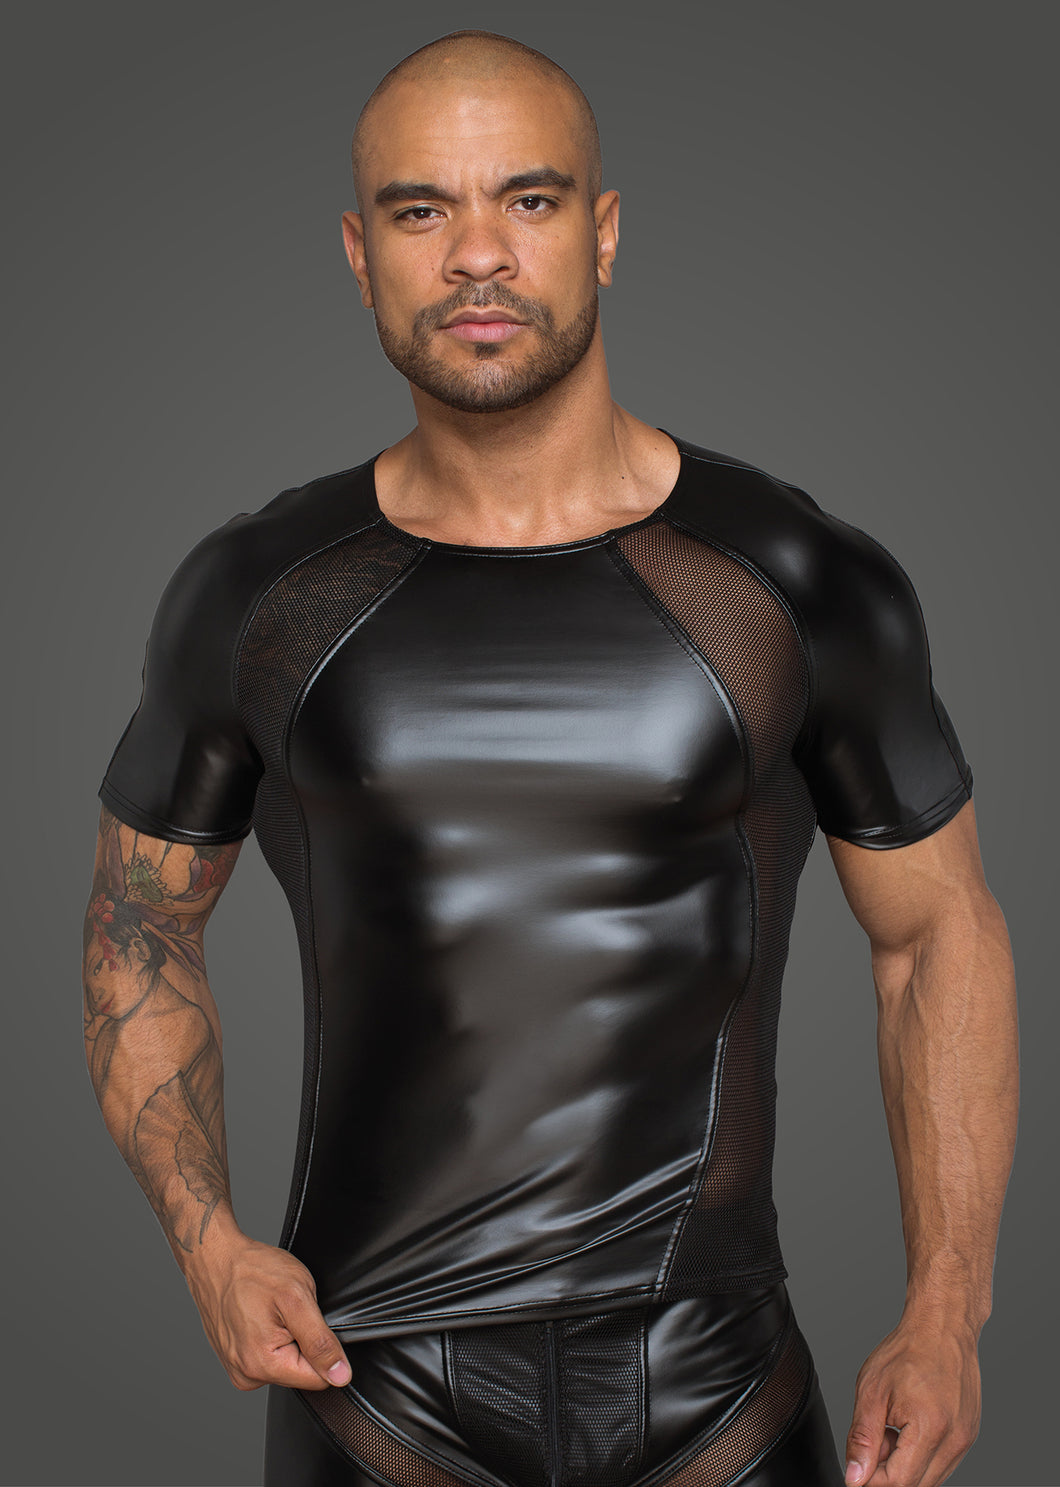 Herrenshirt aus Powerwetlook mit 3D Netzeinsätzen - Weiblichkeit mit Stil